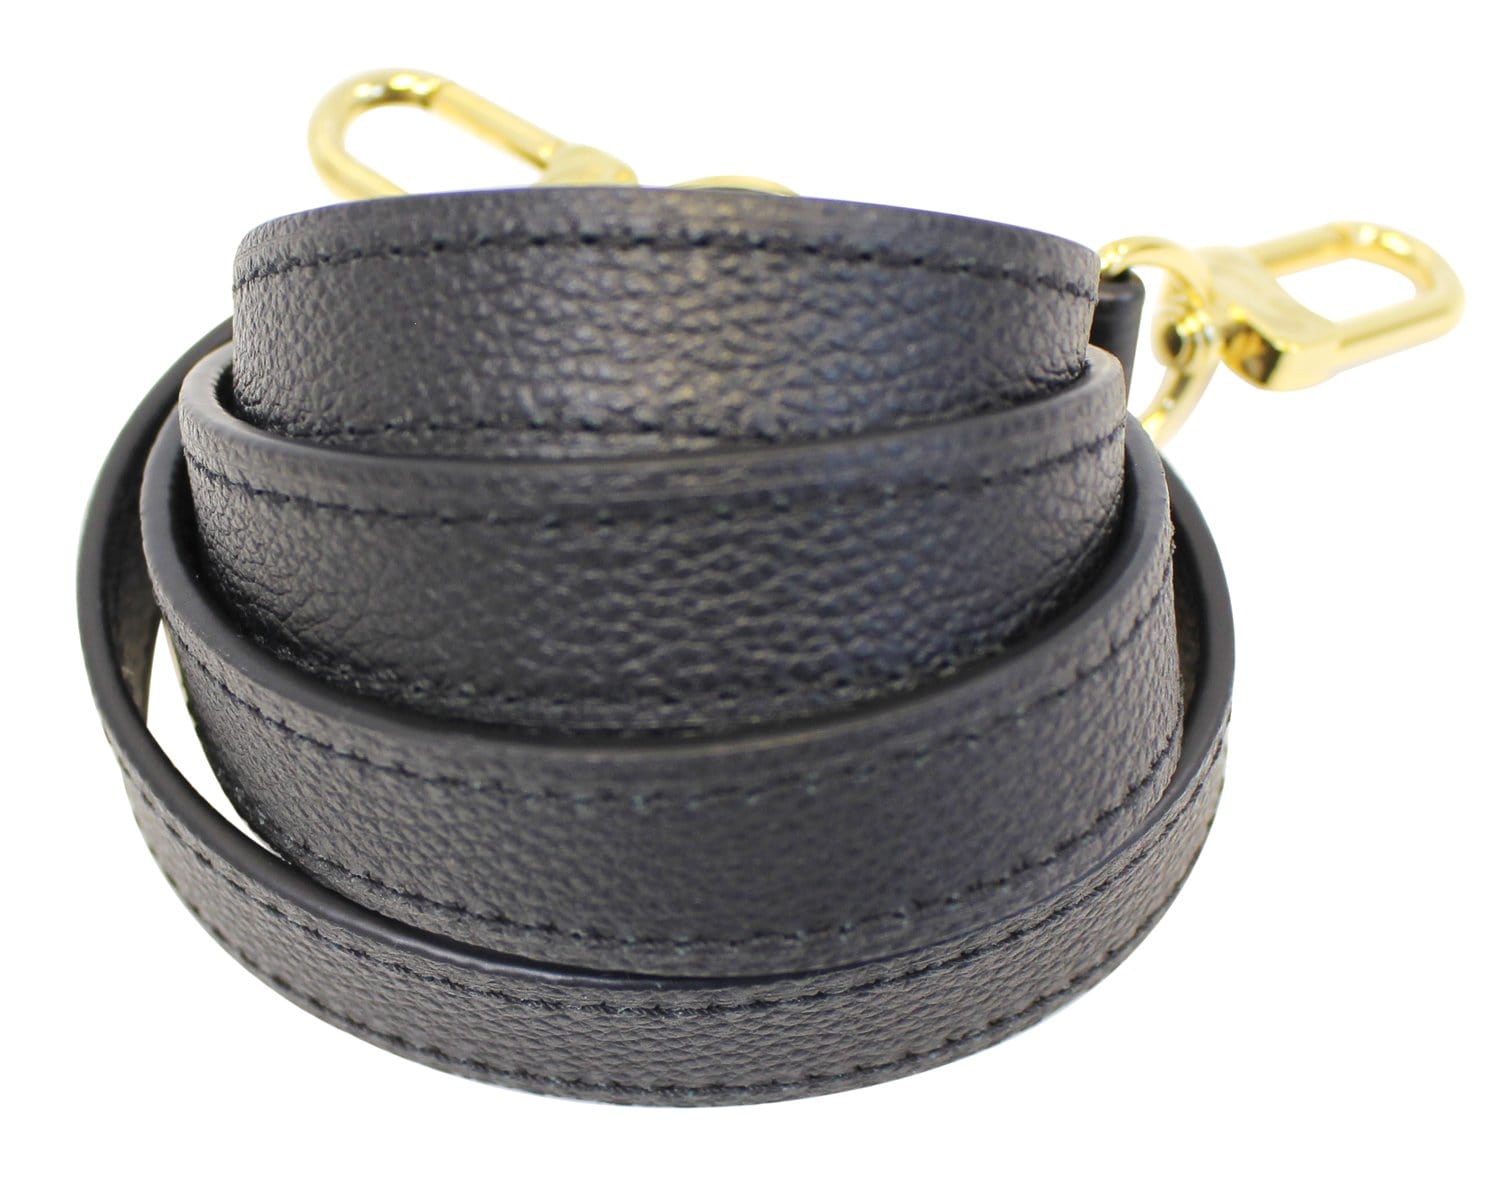 Louis Vuitton Louis Vuitton Black Leather Adjustable Shoulder Strap